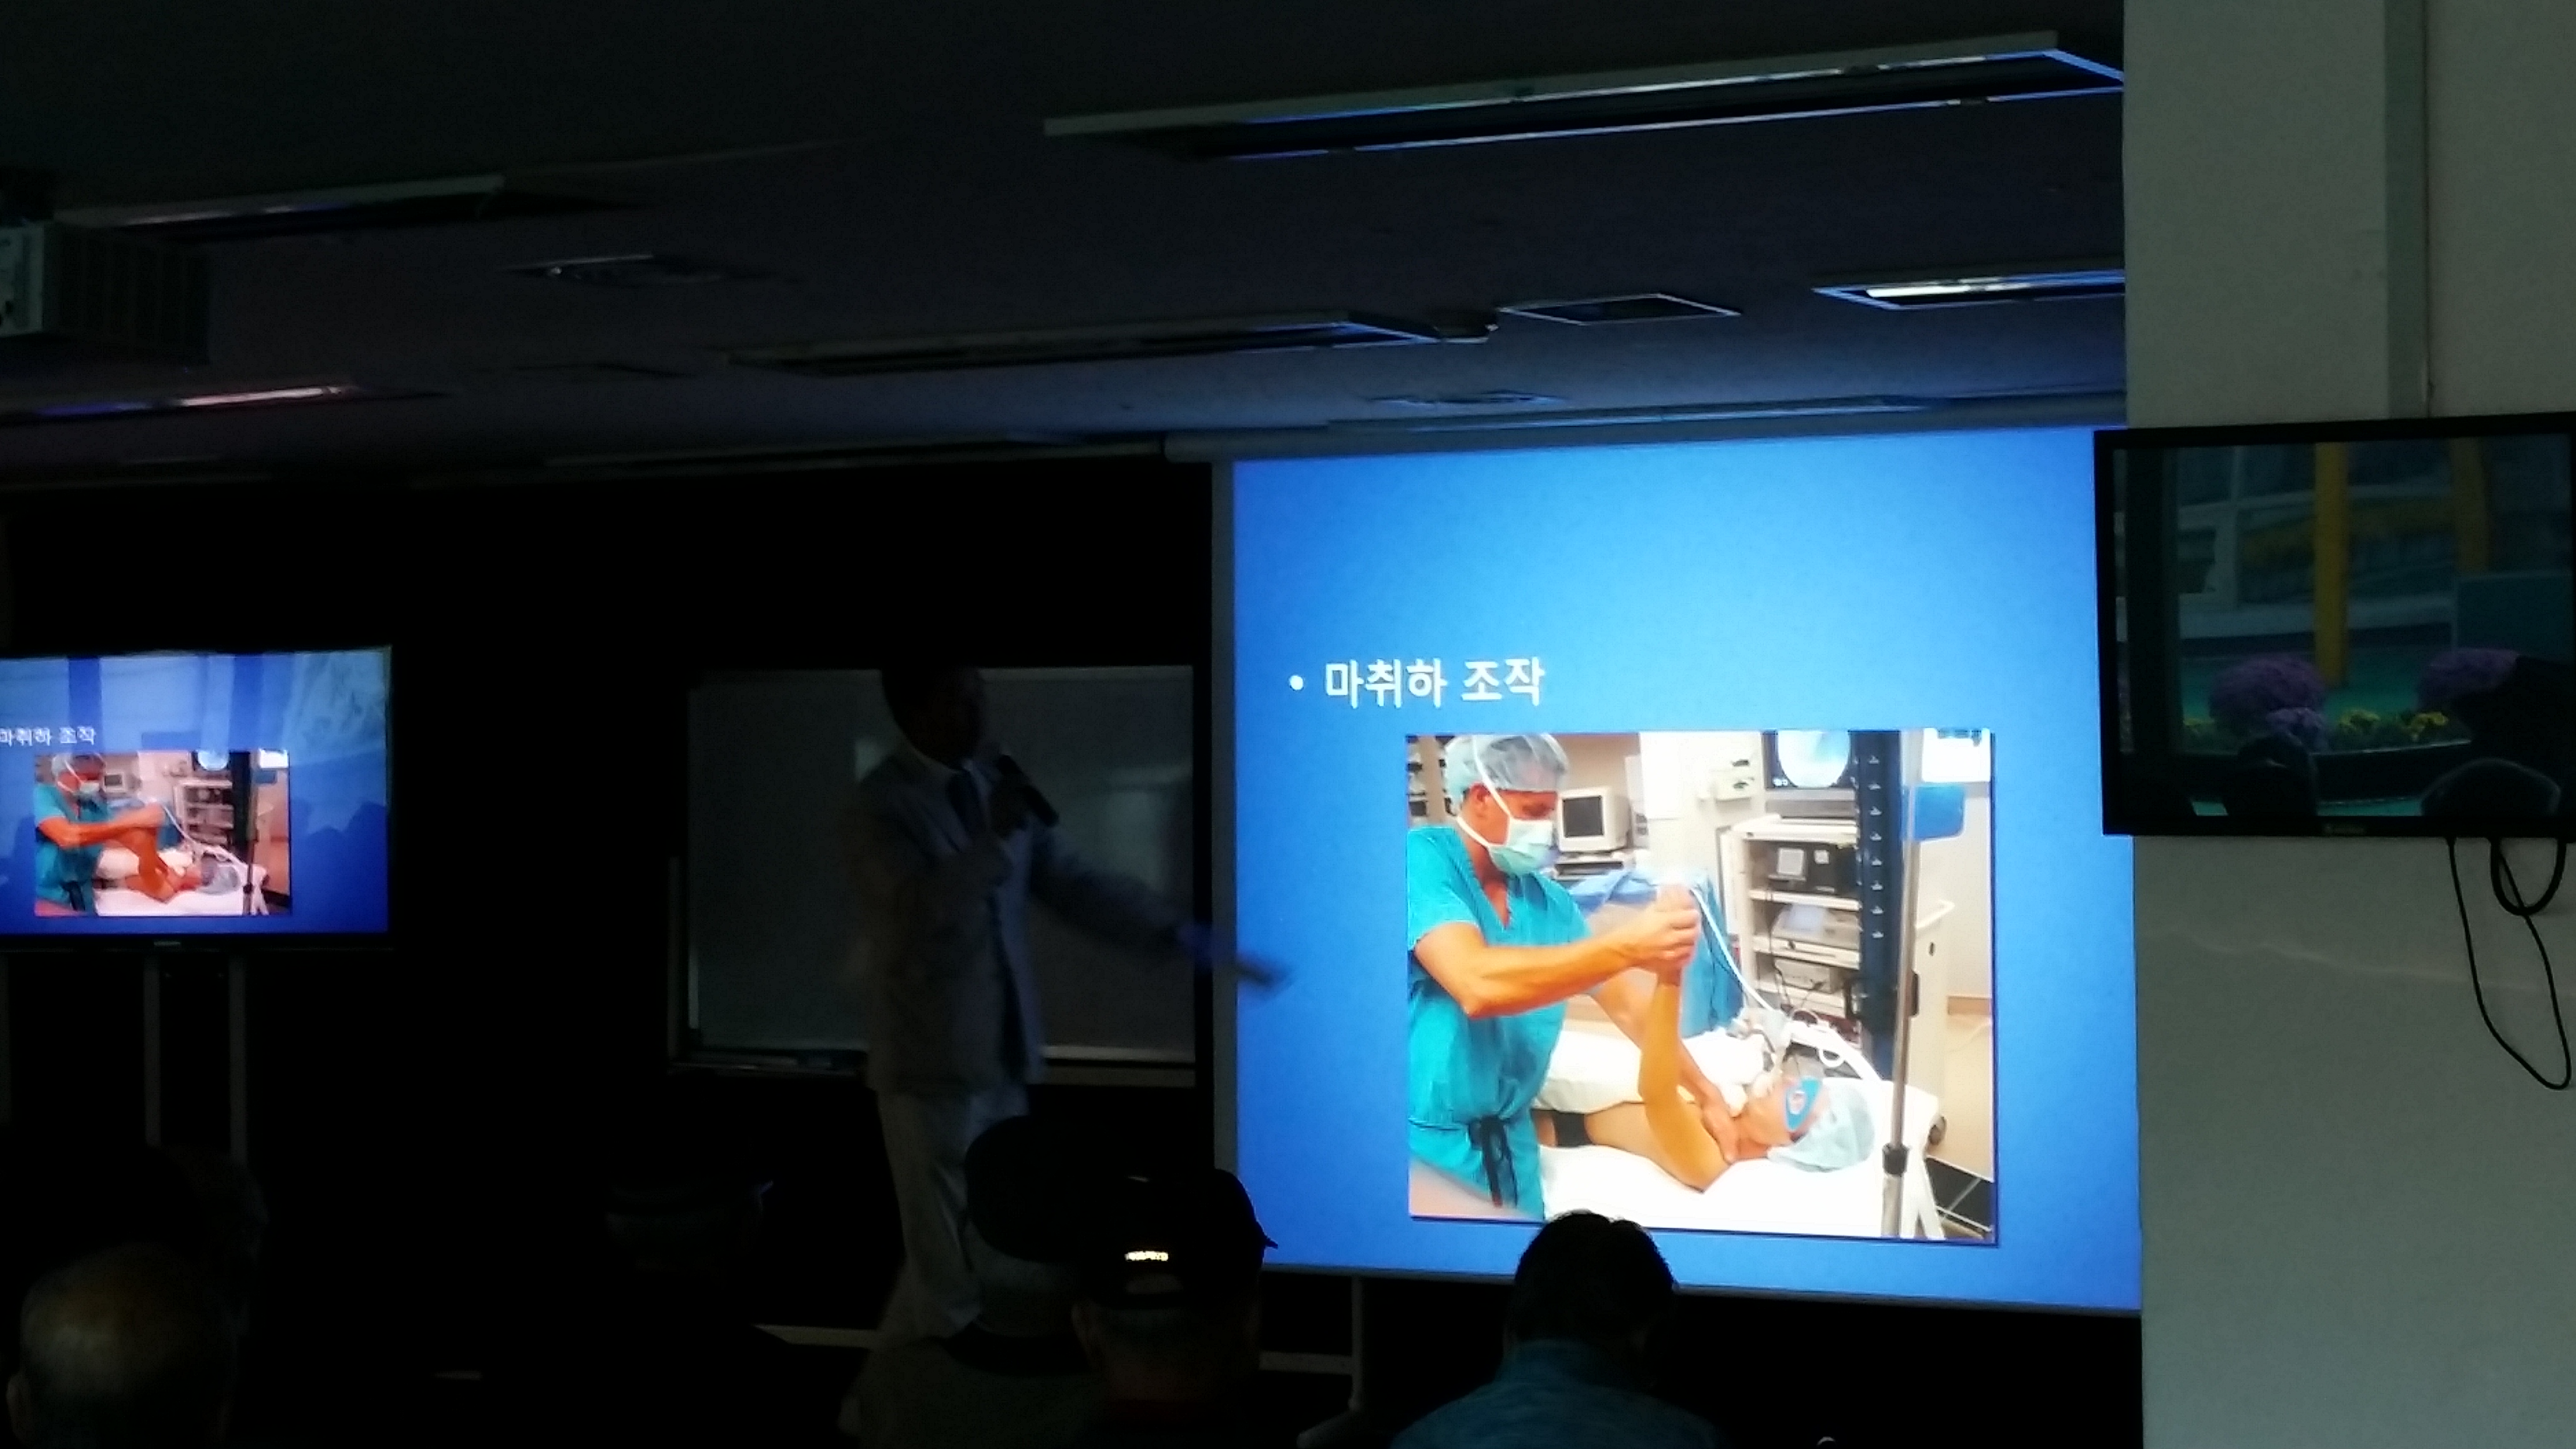 2013년 10월 16일 - 서울노인복지센터 건강강좌 게시글의 7번째 첨부파일입니다.